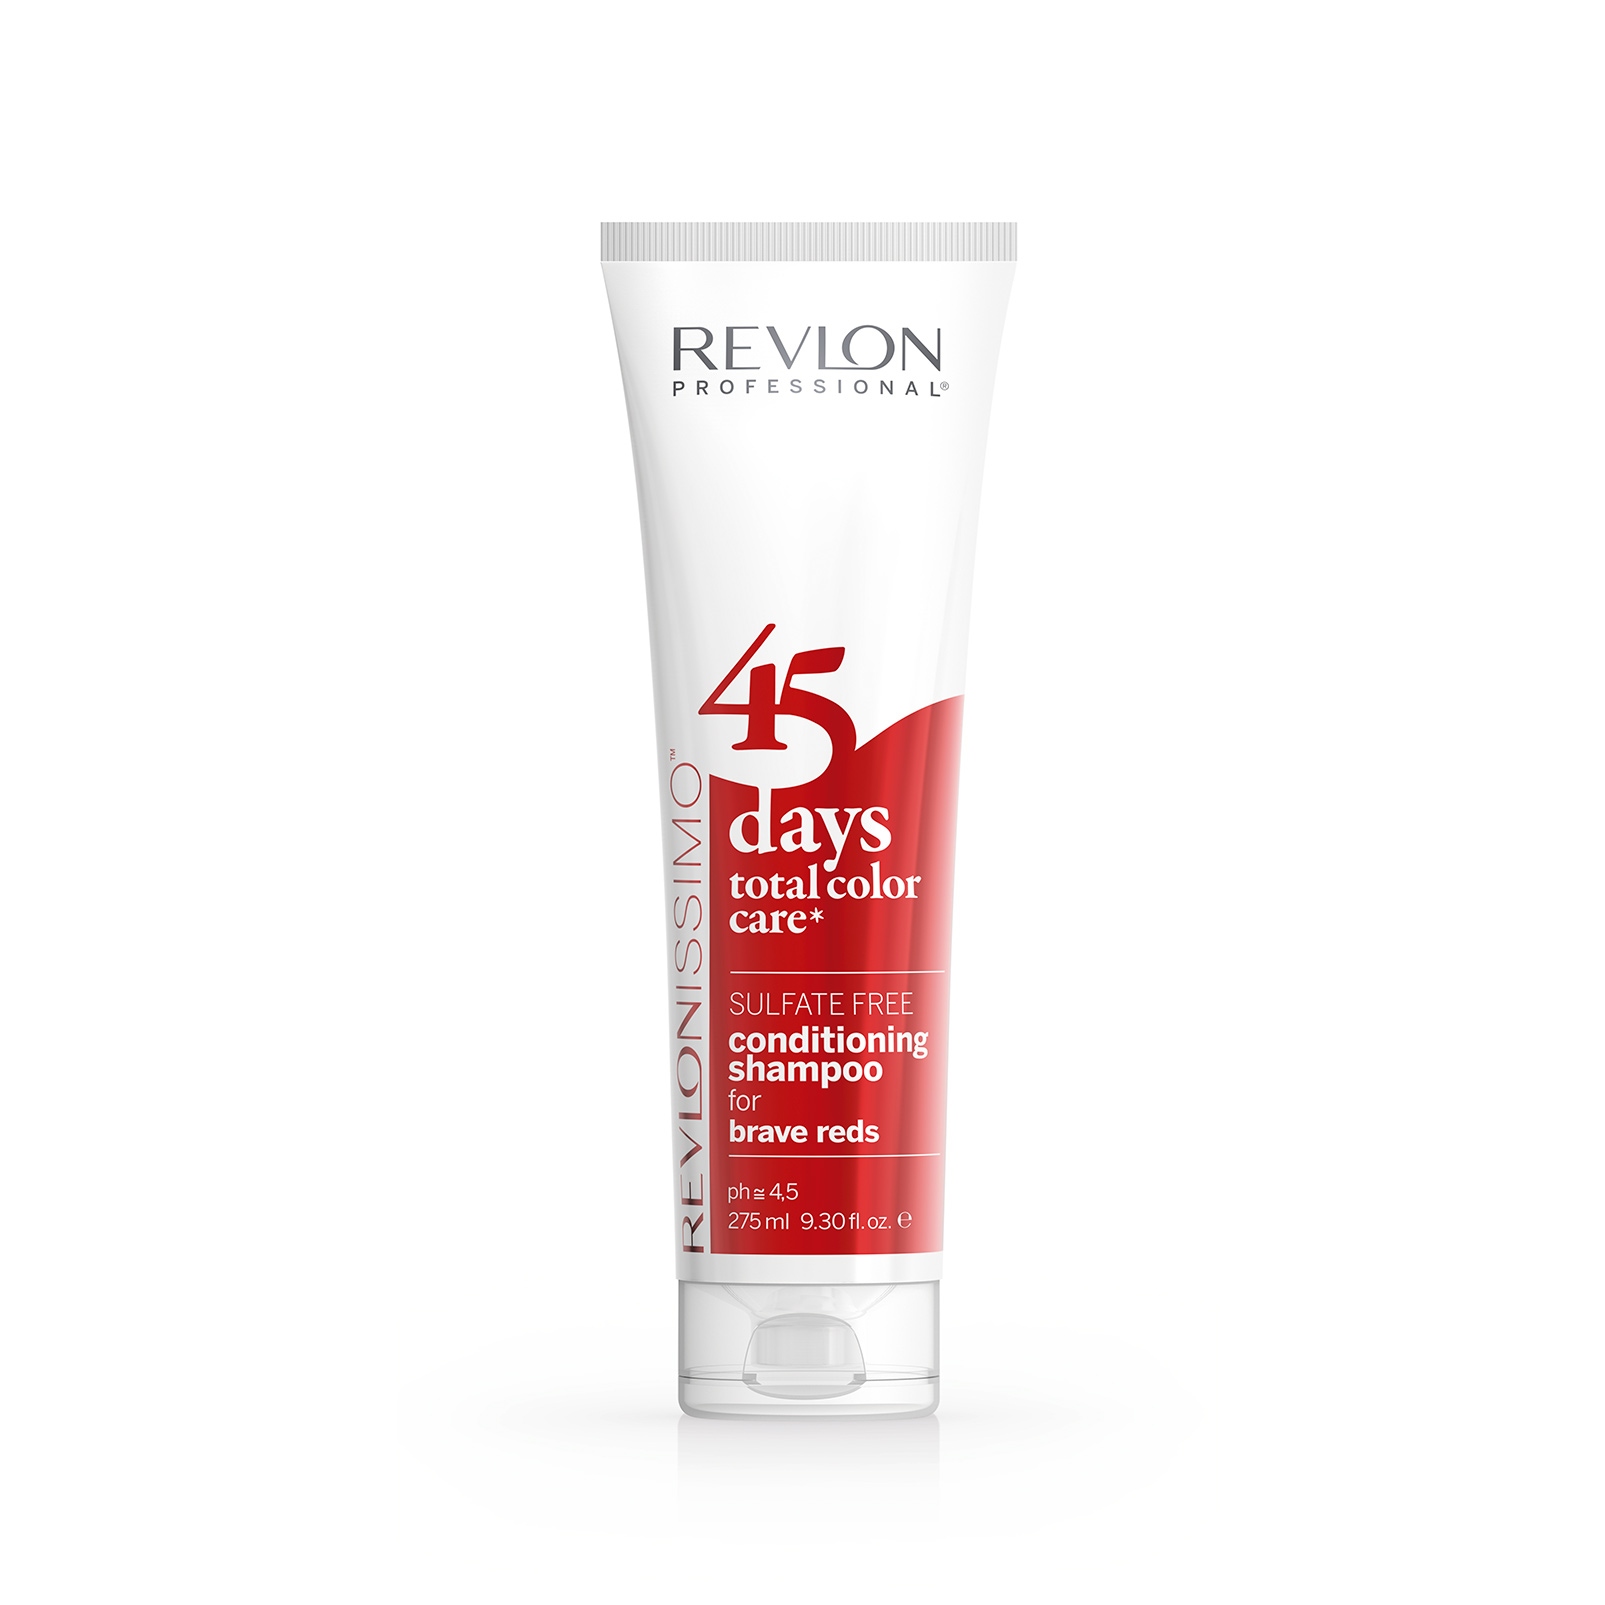 Шампуни для волос:  REVLON Professional -  Шампунь-кондиционер для ярких Красных оттенков 45 Days Shampoo BRAVE REDS (275 мл)